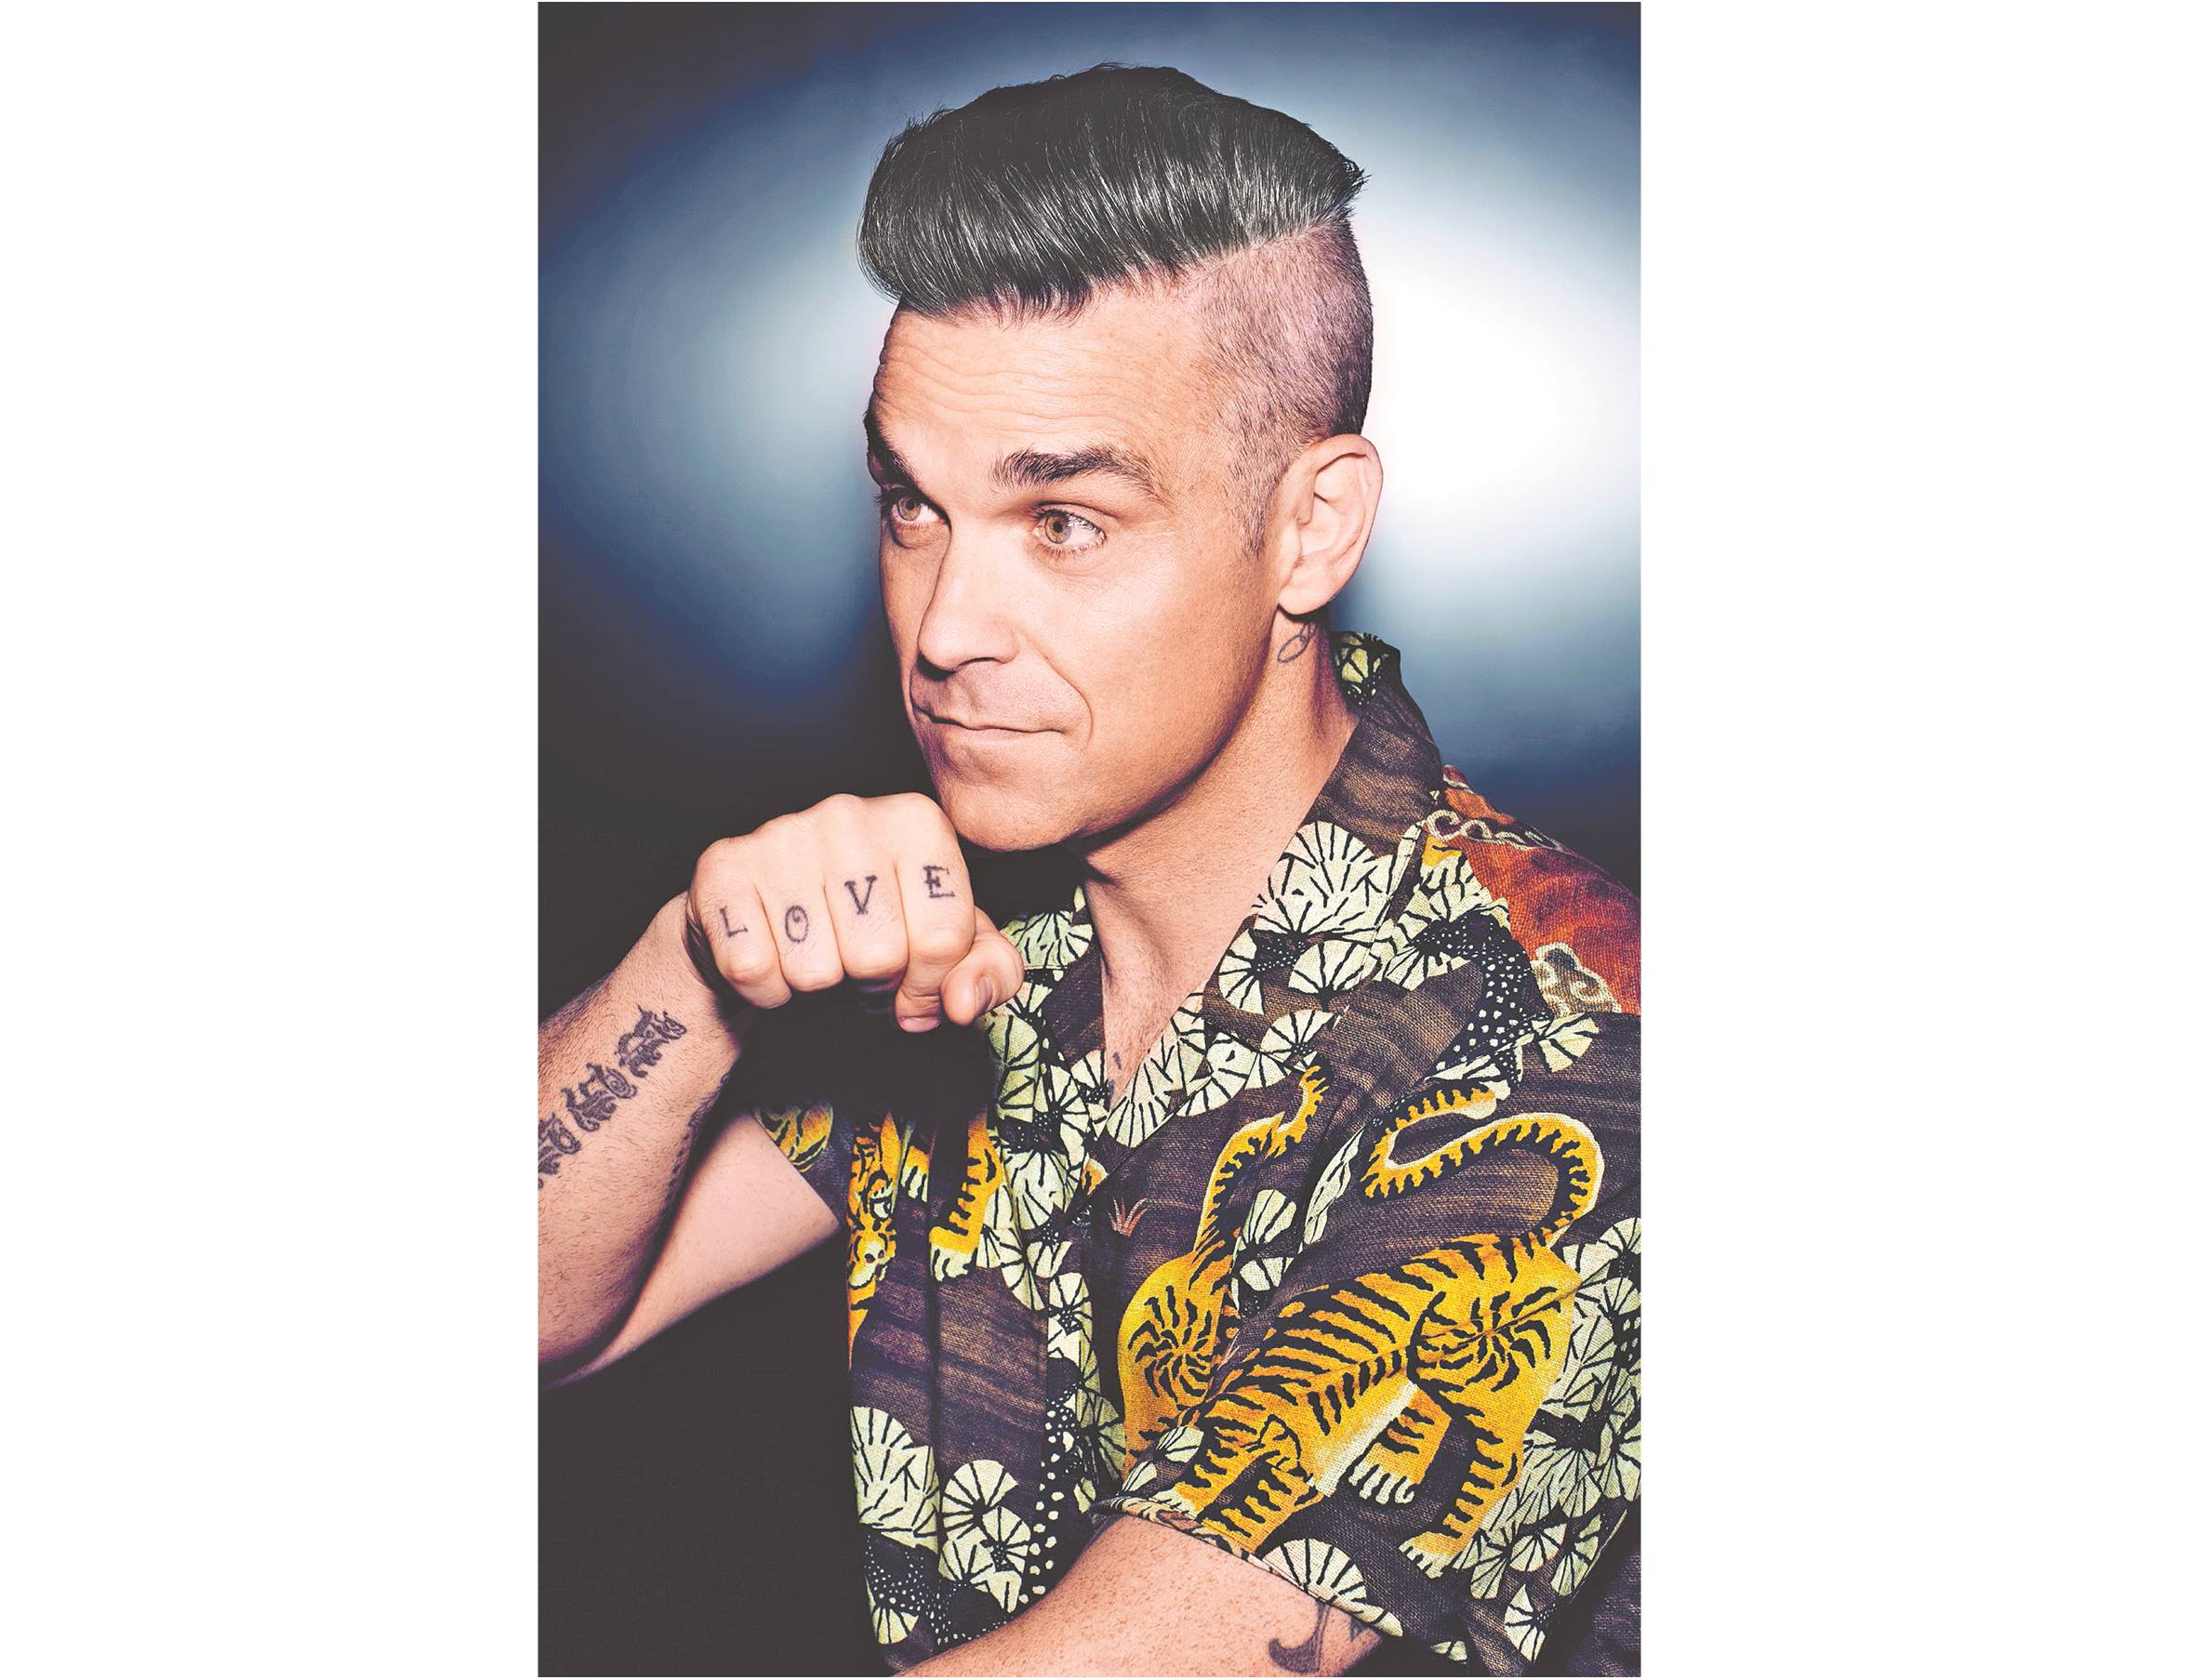 “Mi vida es mejor con hijos”: Robbie Williams